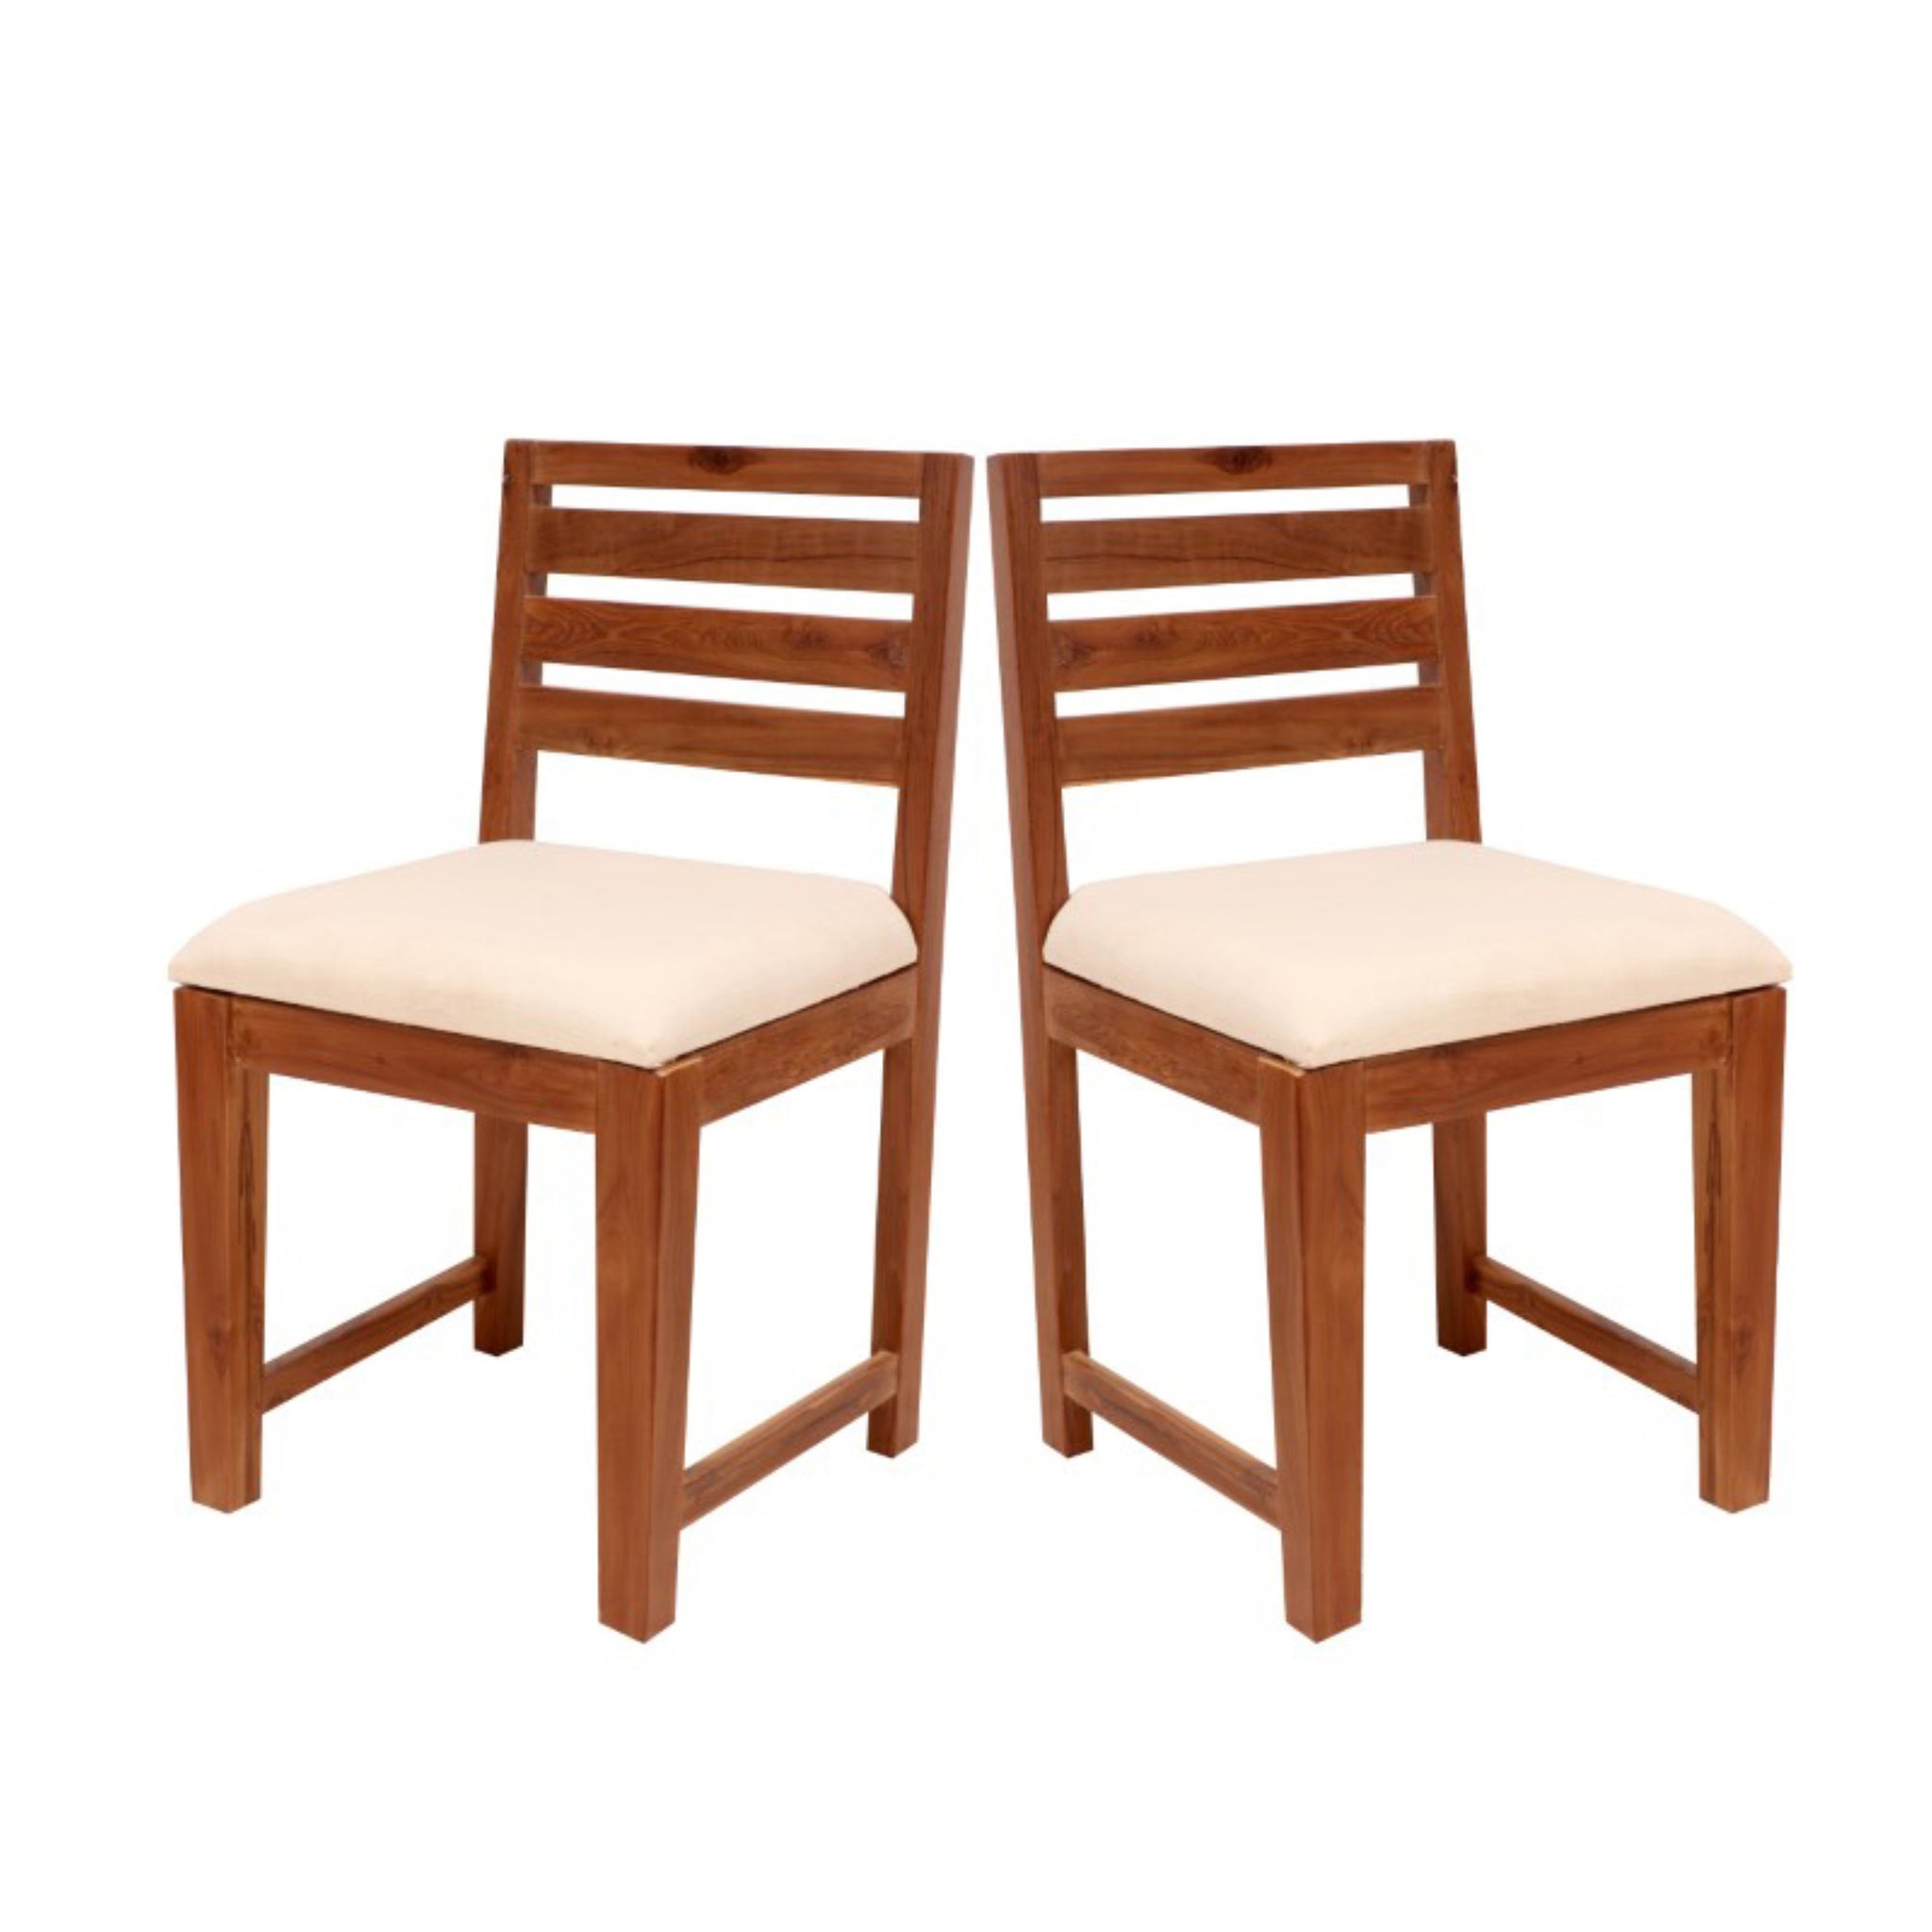 (Set of 2) Simple Teak wood dining chair